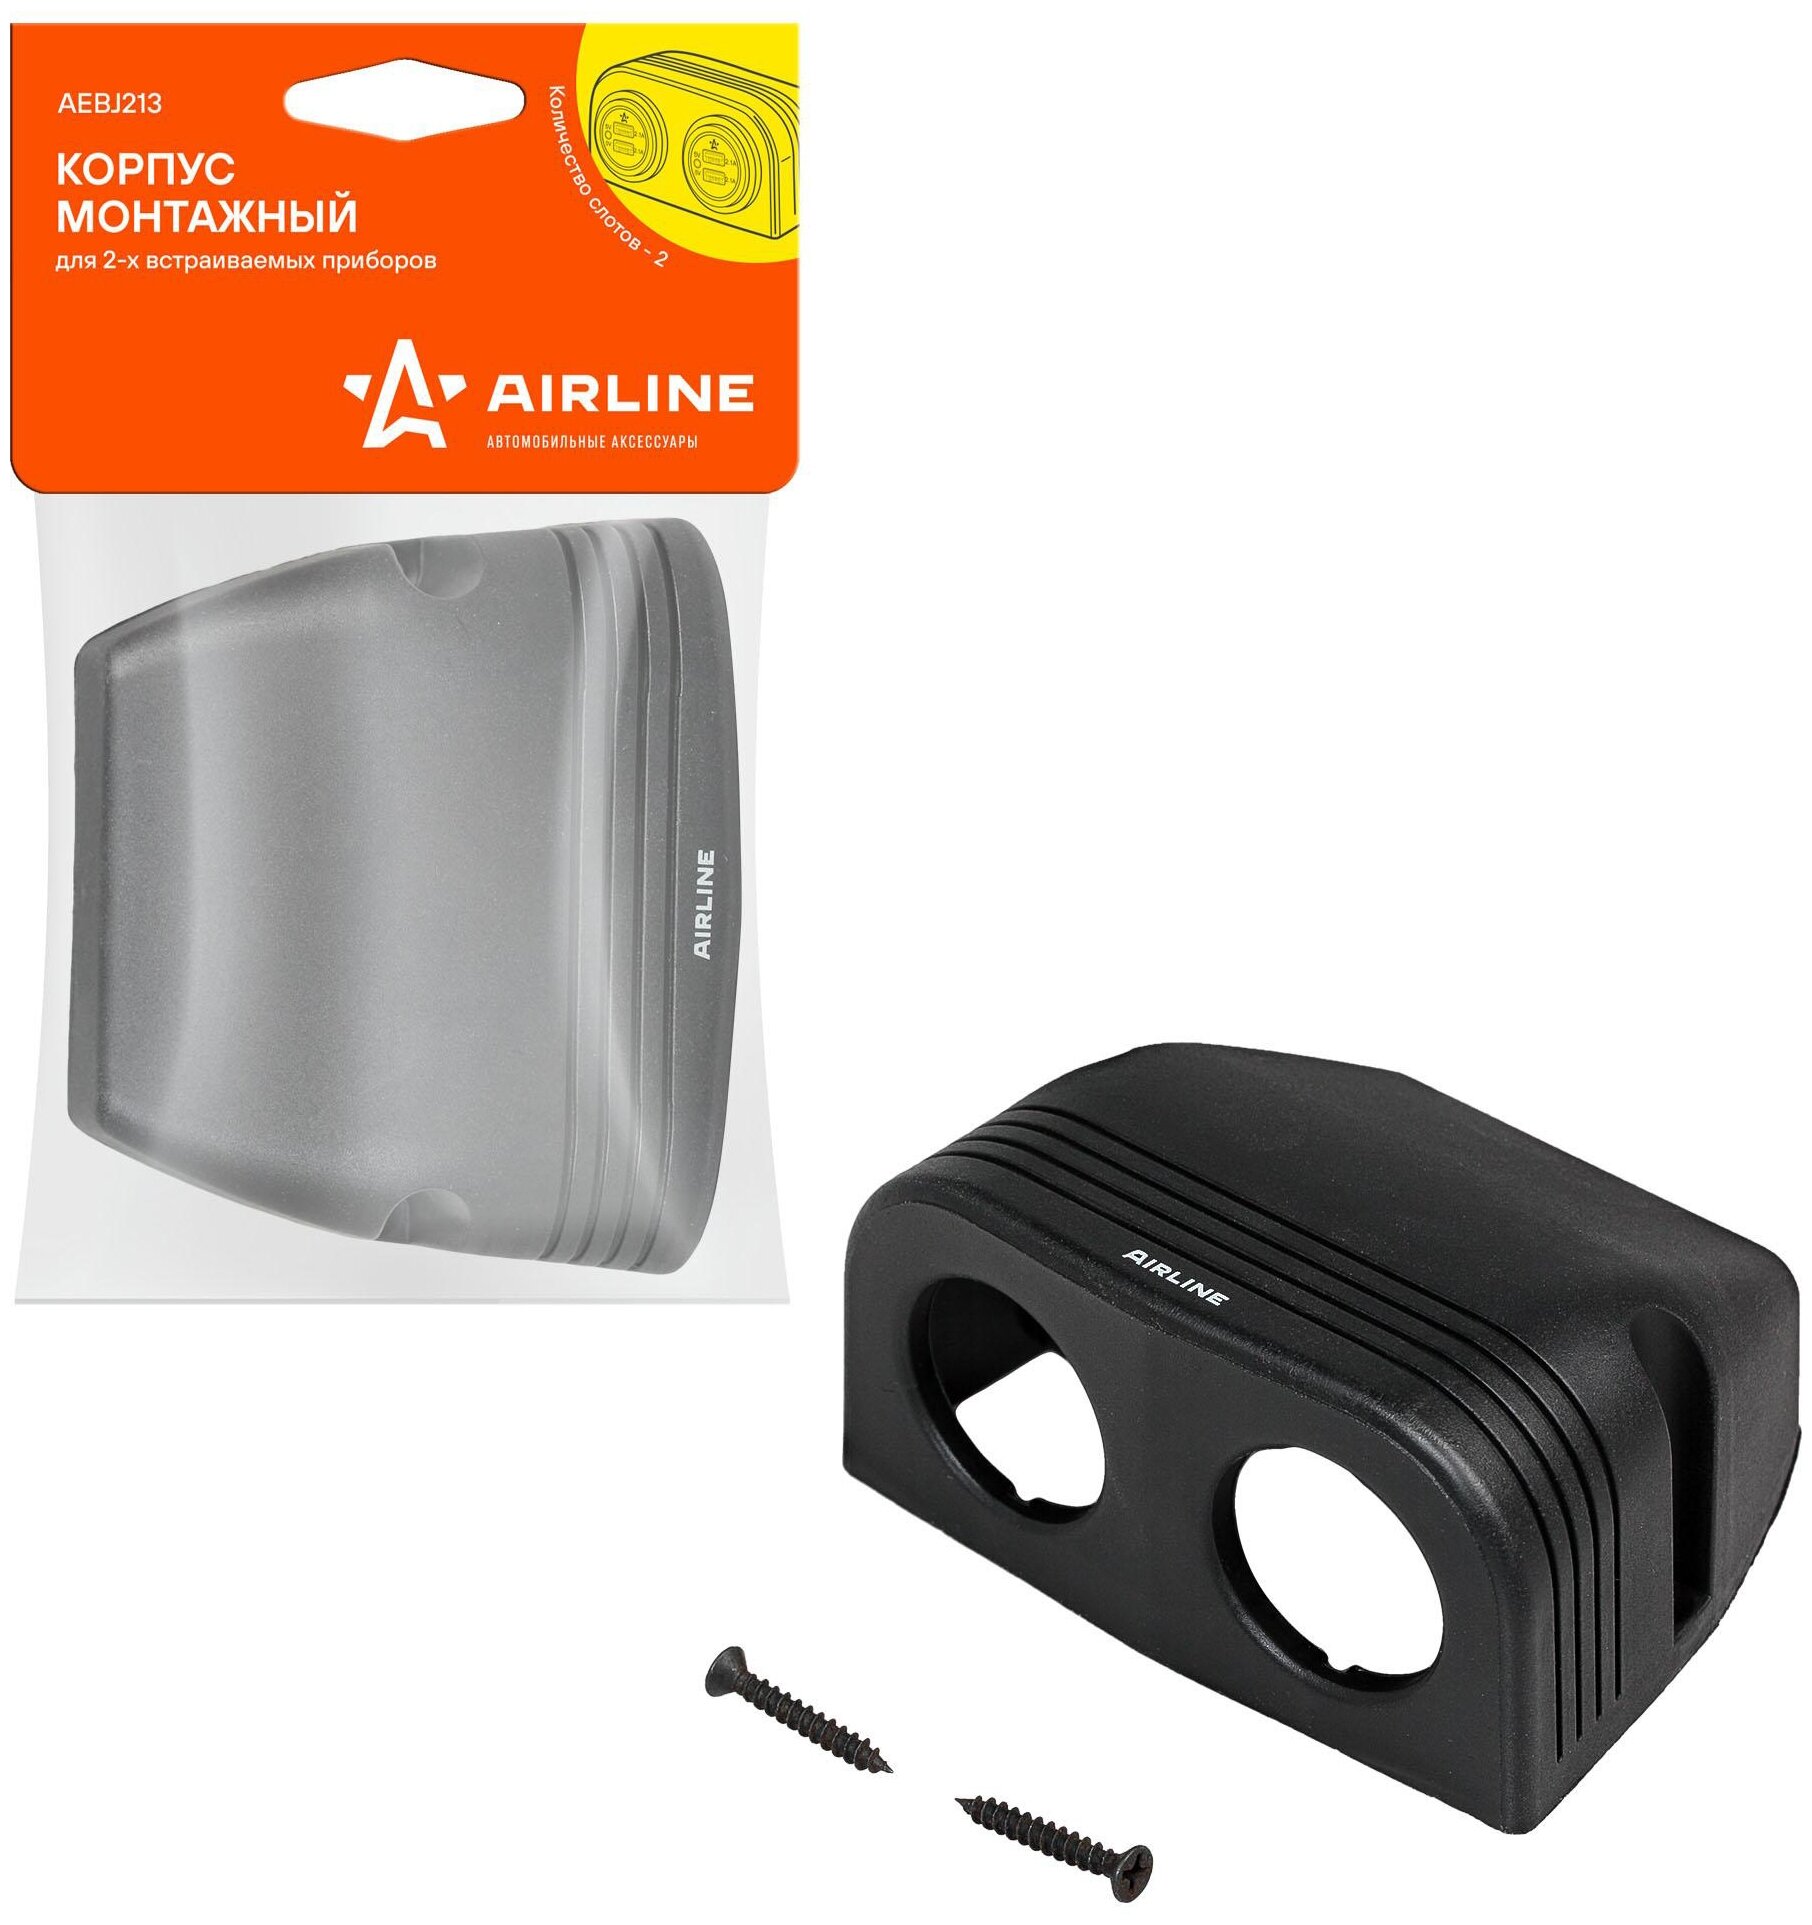 Корпус монтажный для 2 встраиваемых приборов AEBJ213 AIRLINE